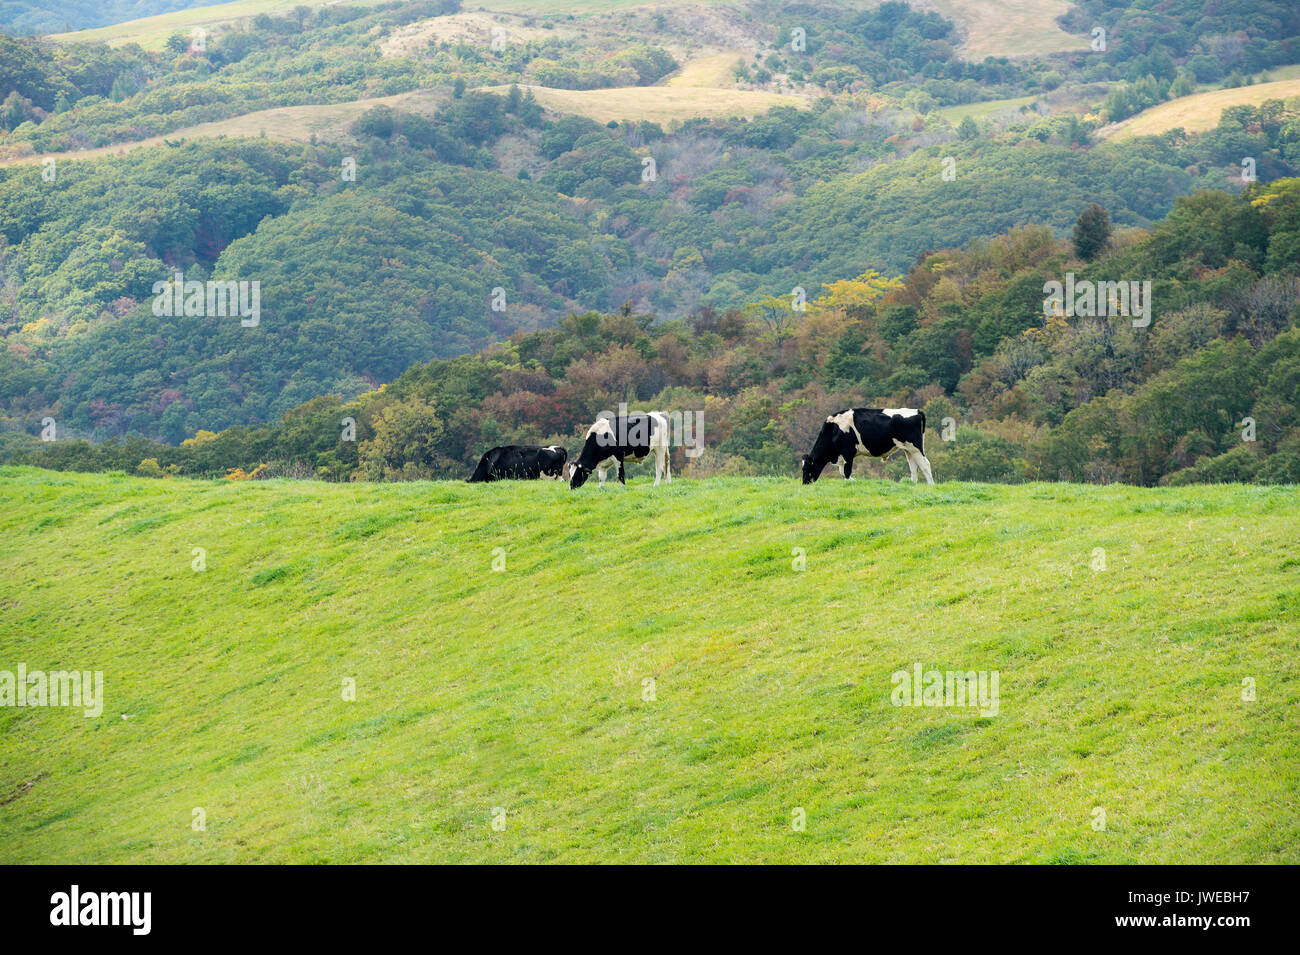 Vacche su un campo verde. Foto Stock